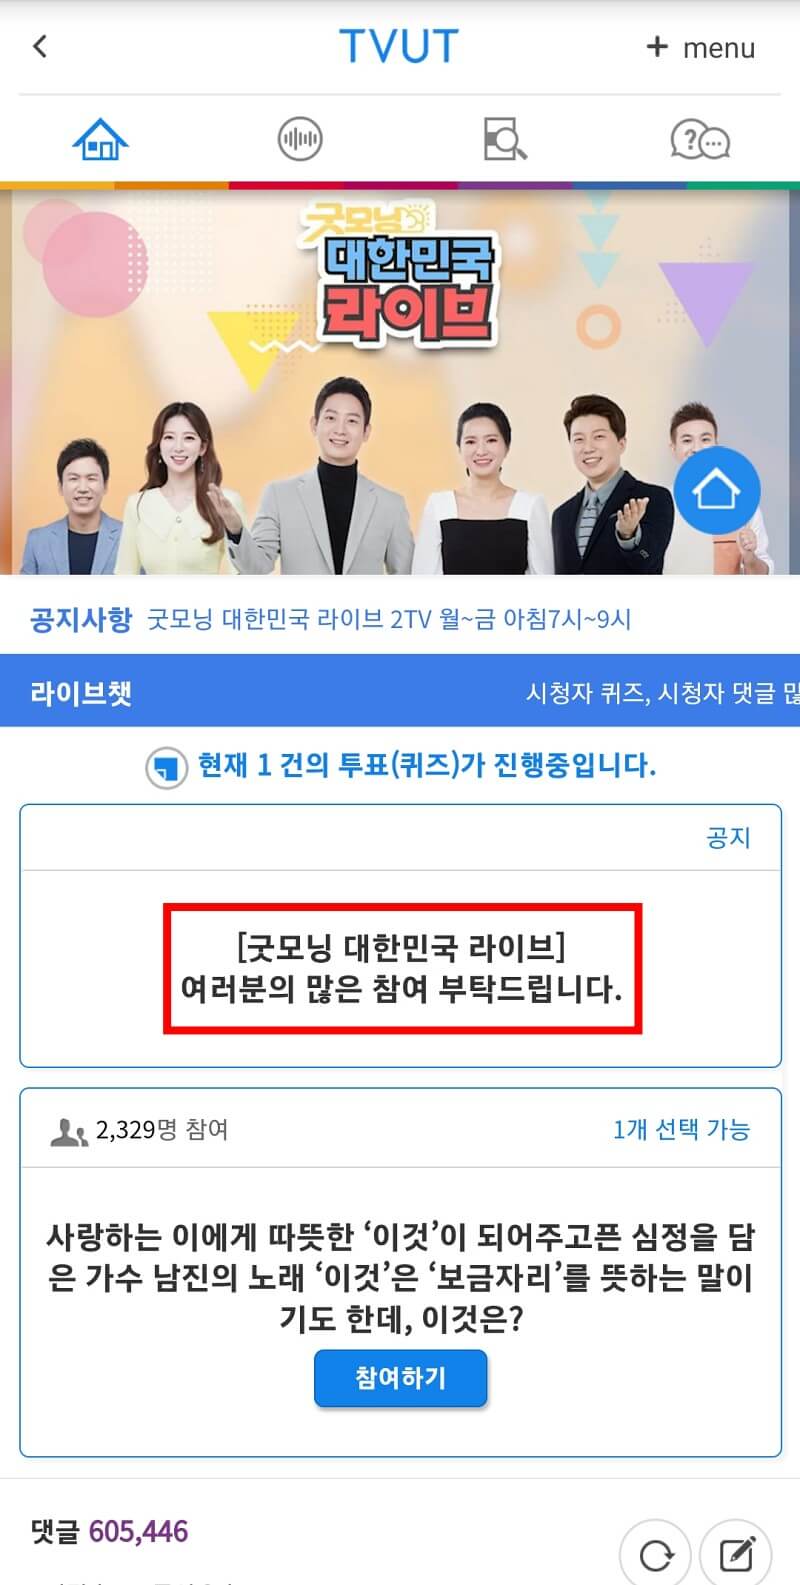 KBS 티벗 오류 수정